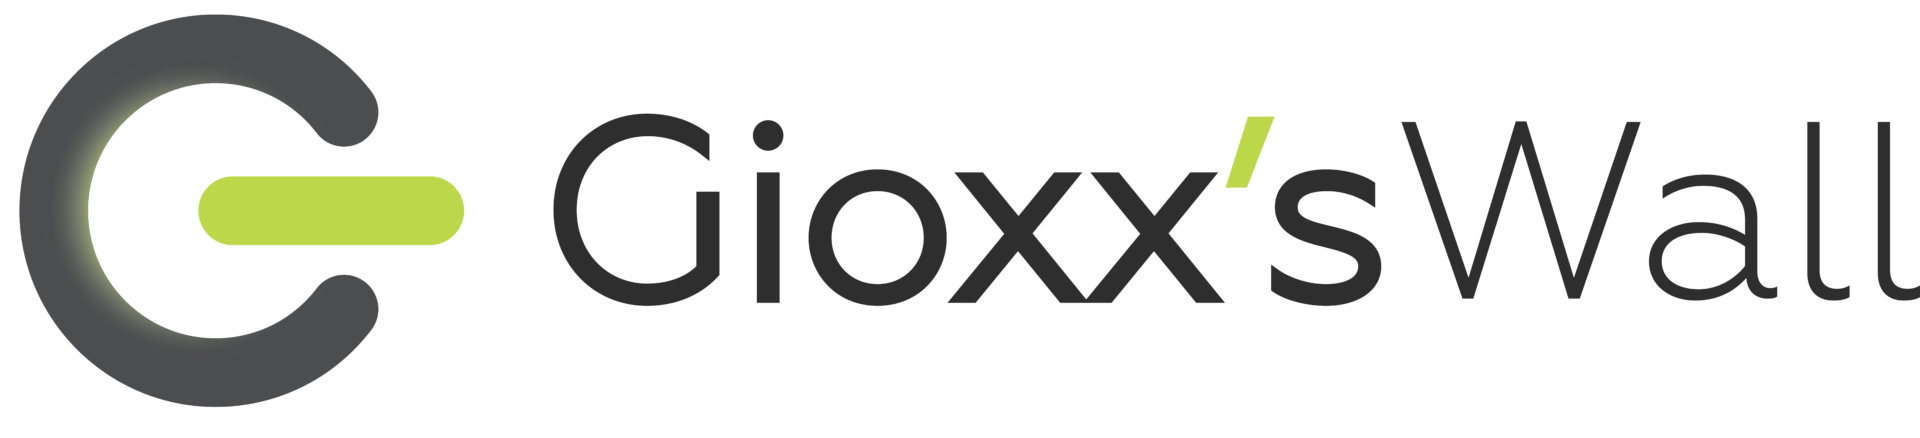 Gioxx.org